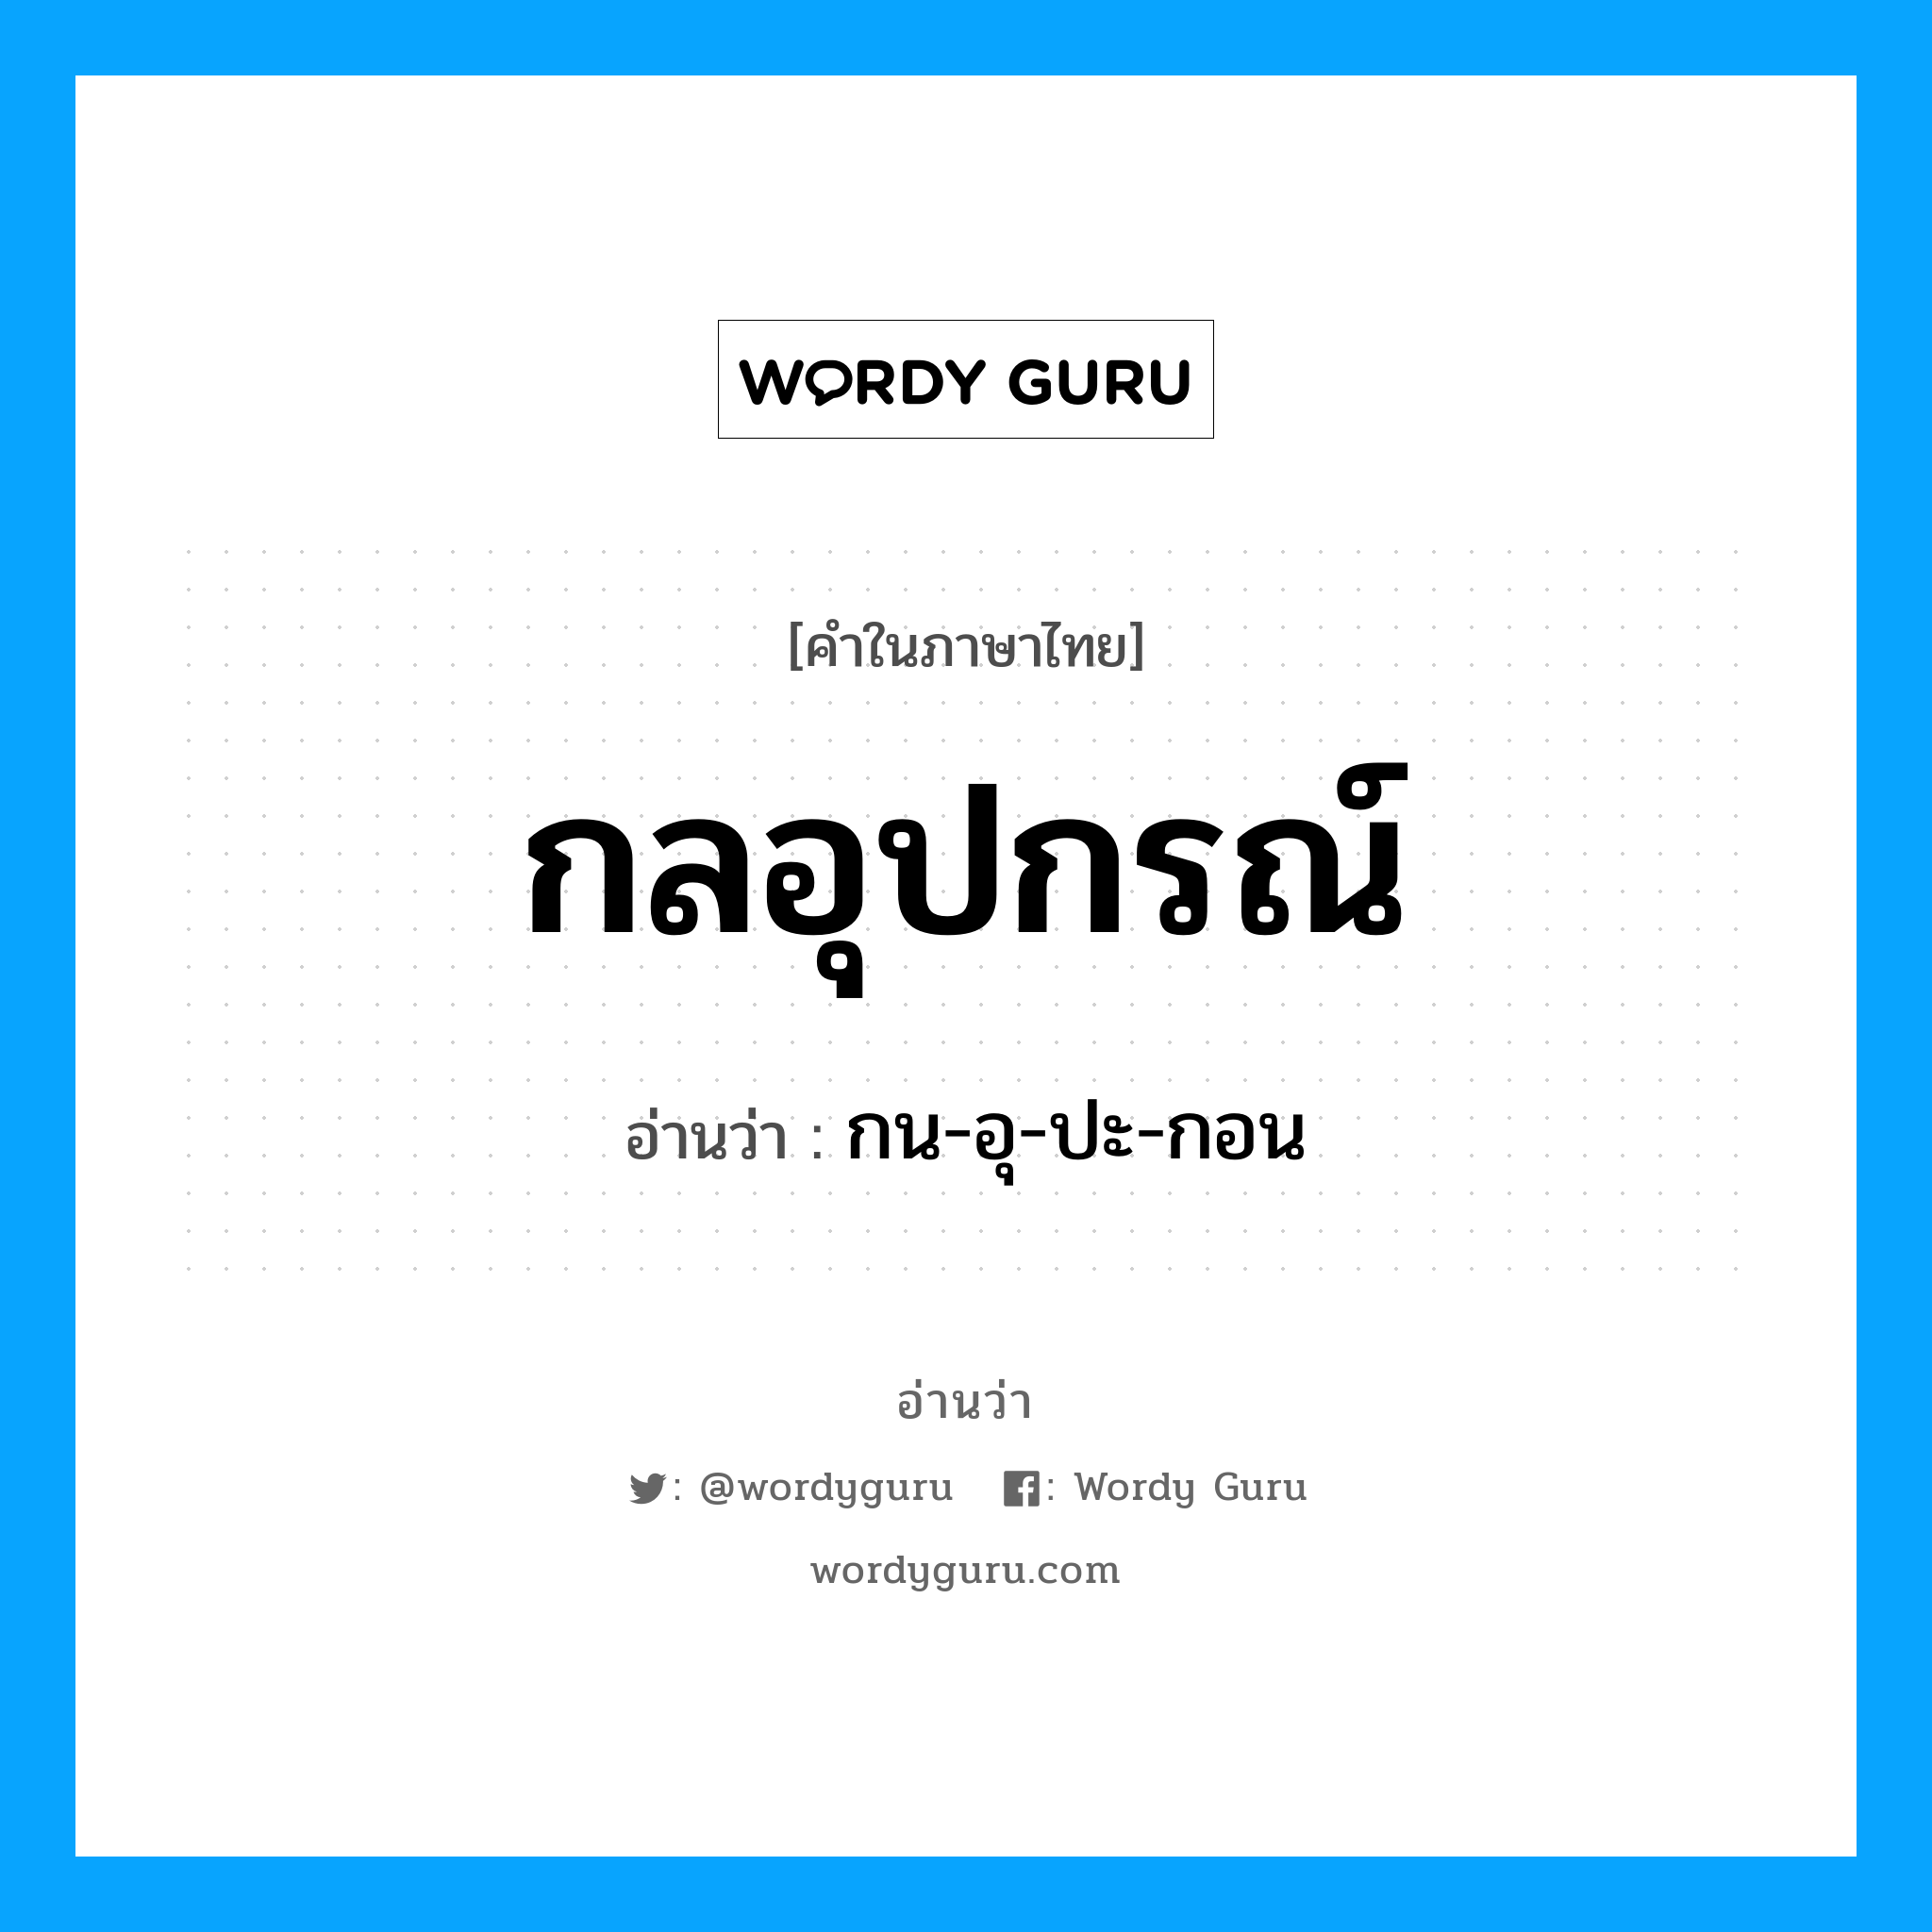 กน-อุ-ปะ-กอน เป็นคำอ่านของคำไหน?, คำในภาษาไทย กน-อุ-ปะ-กอน อ่านว่า กลอุปกรณ์